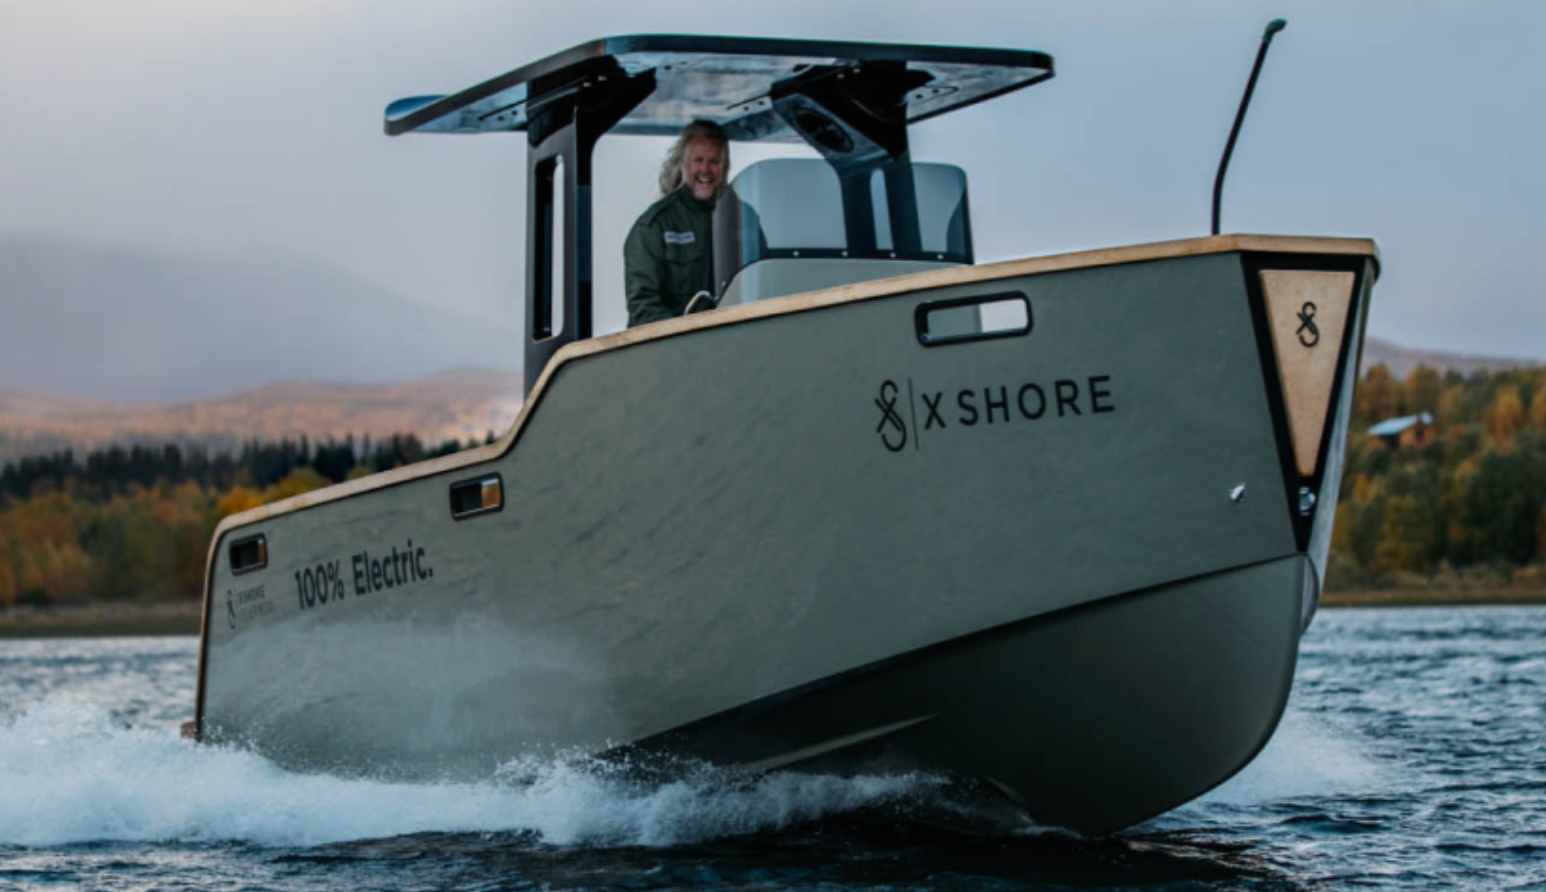 X-Shore Eelex 800, X-Shore electric boat